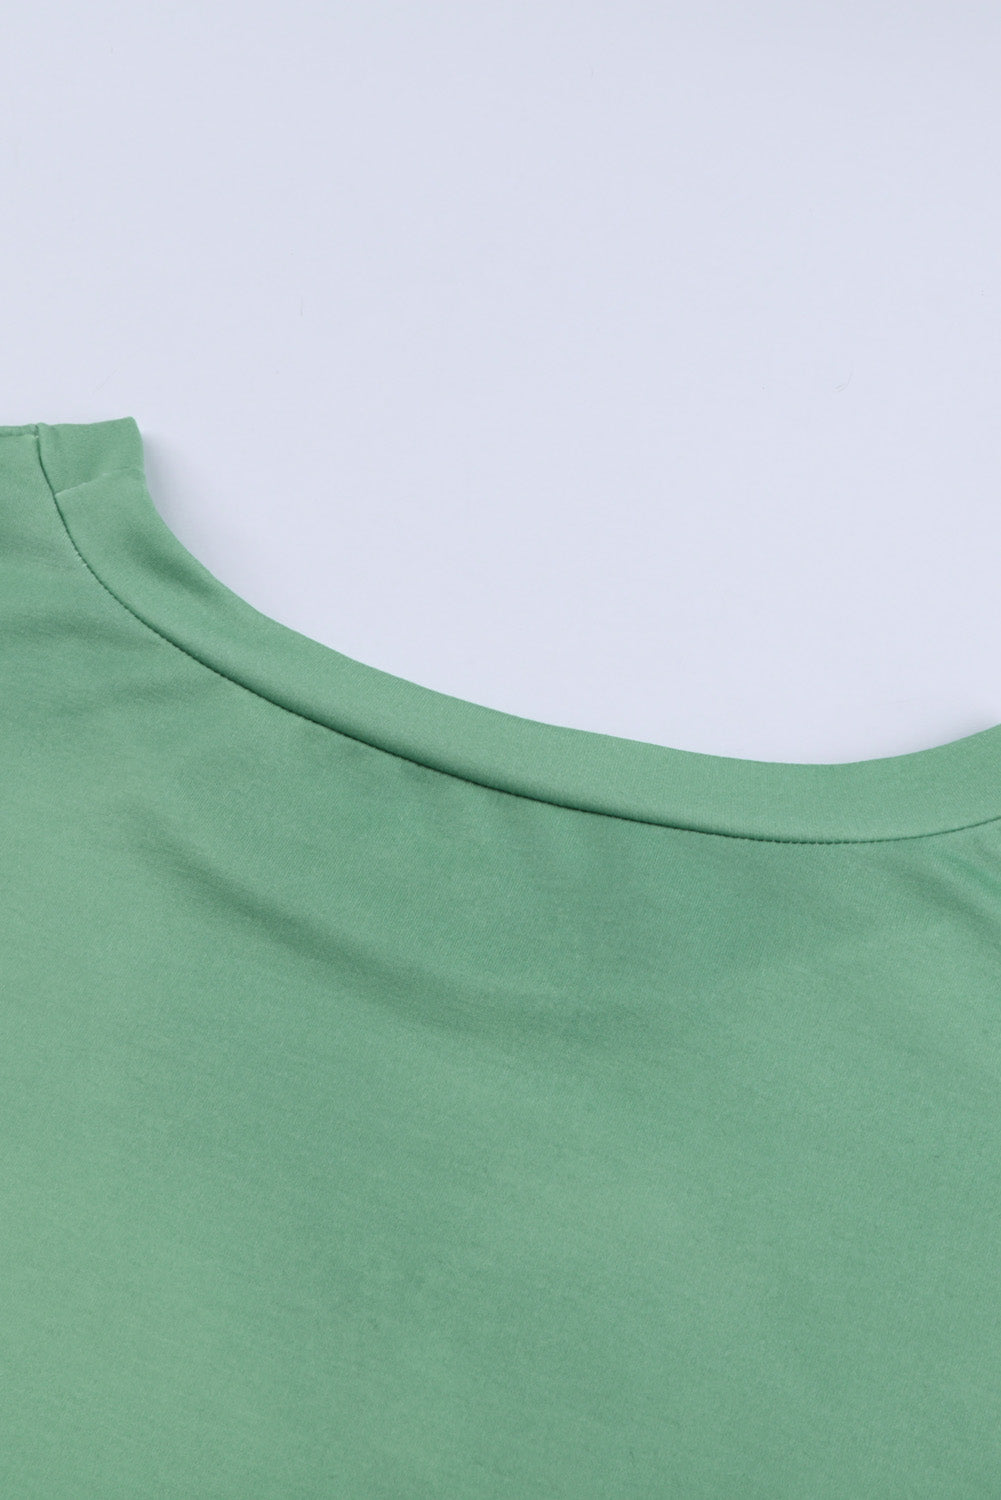 Green Women's Color Block Reindeer Print Gradient Crew Neck Sweatshirts LC2531516-9